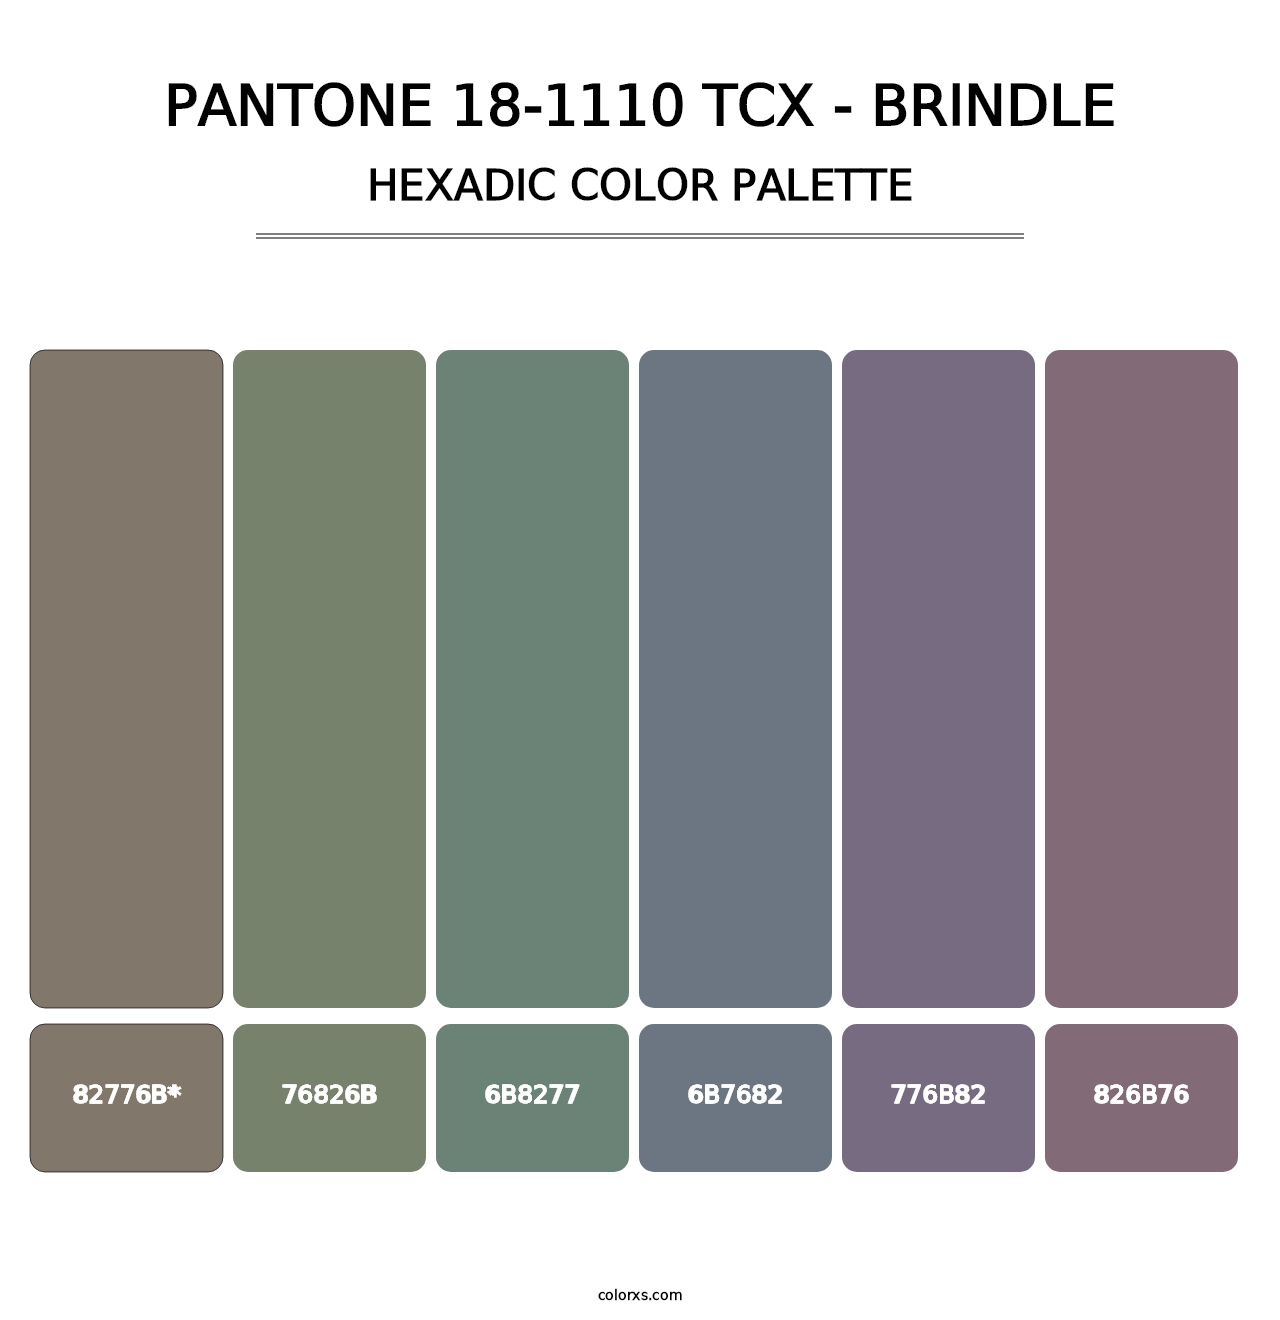 PANTONE 18-1110 TCX - Brindle - Hexadic Color Palette